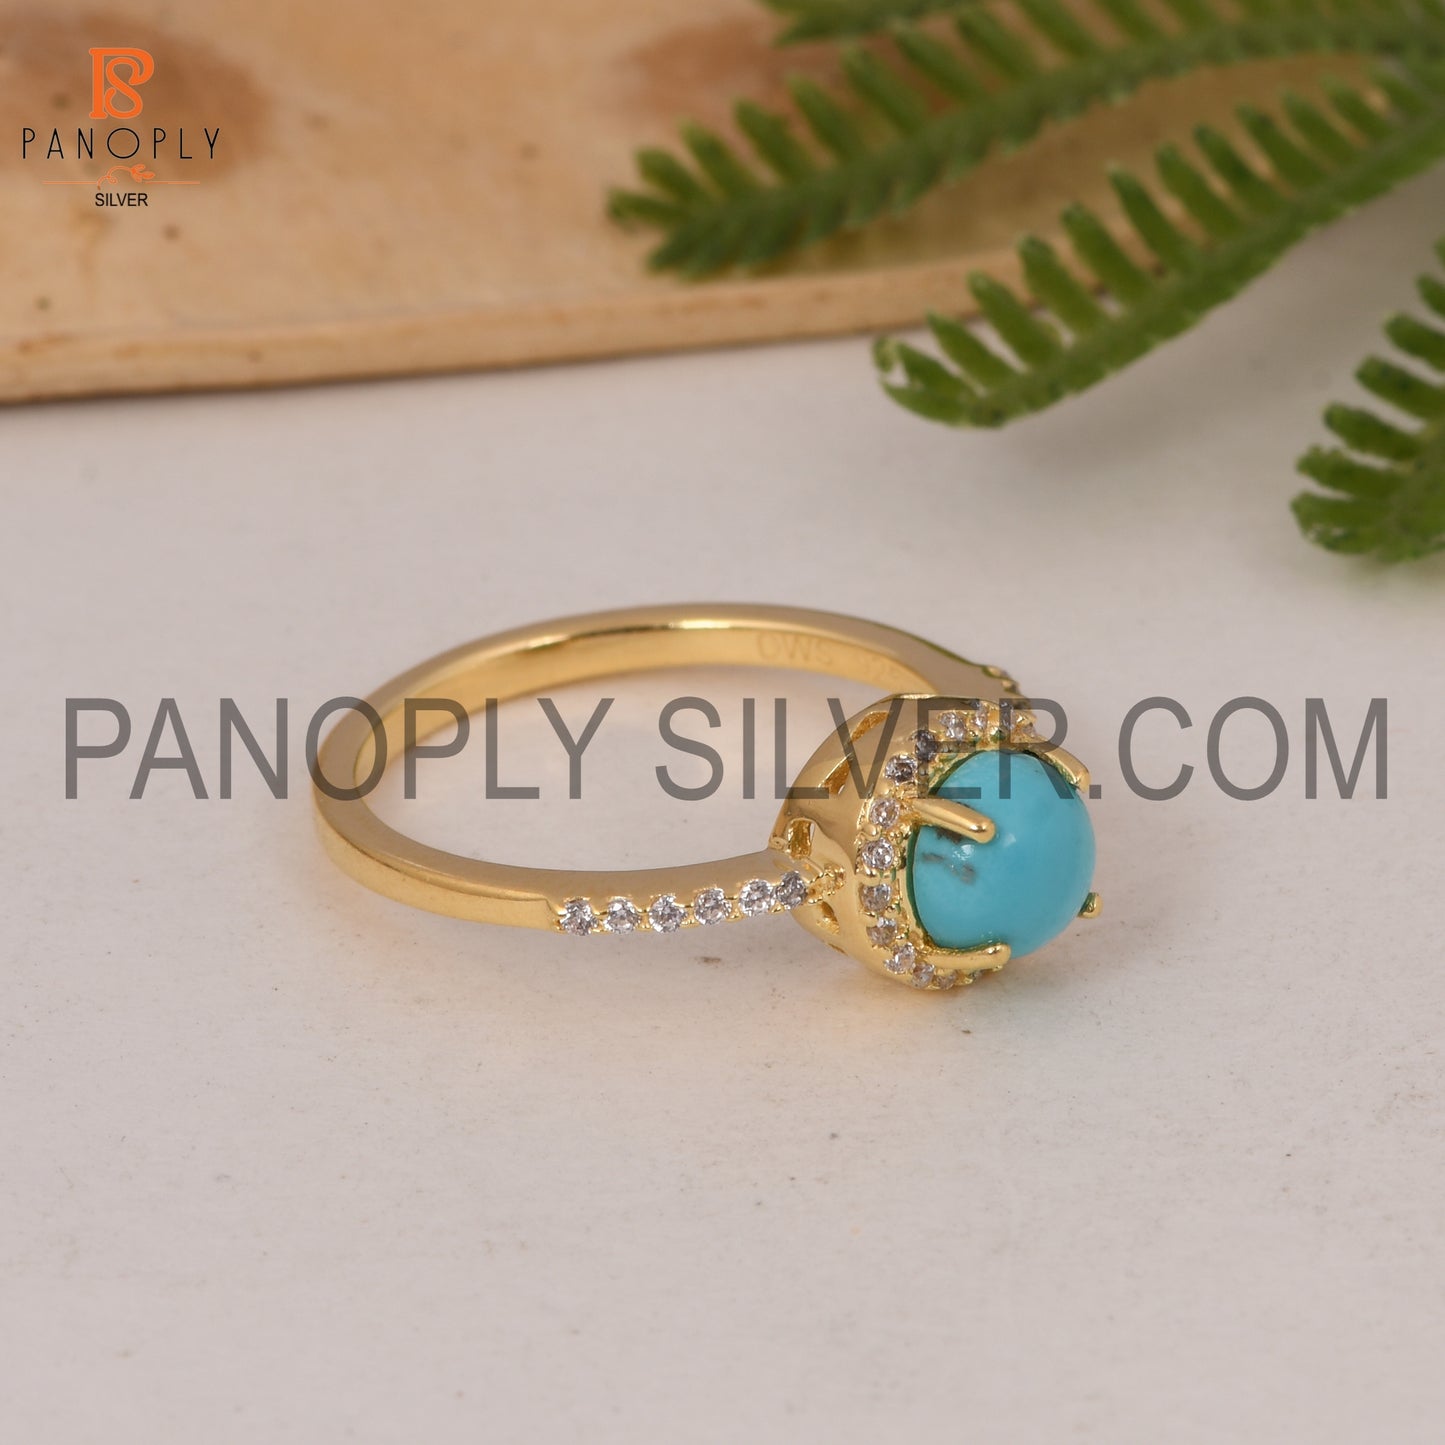 Arizona Turquoise & CZ Studded Ring Gift For Wedding